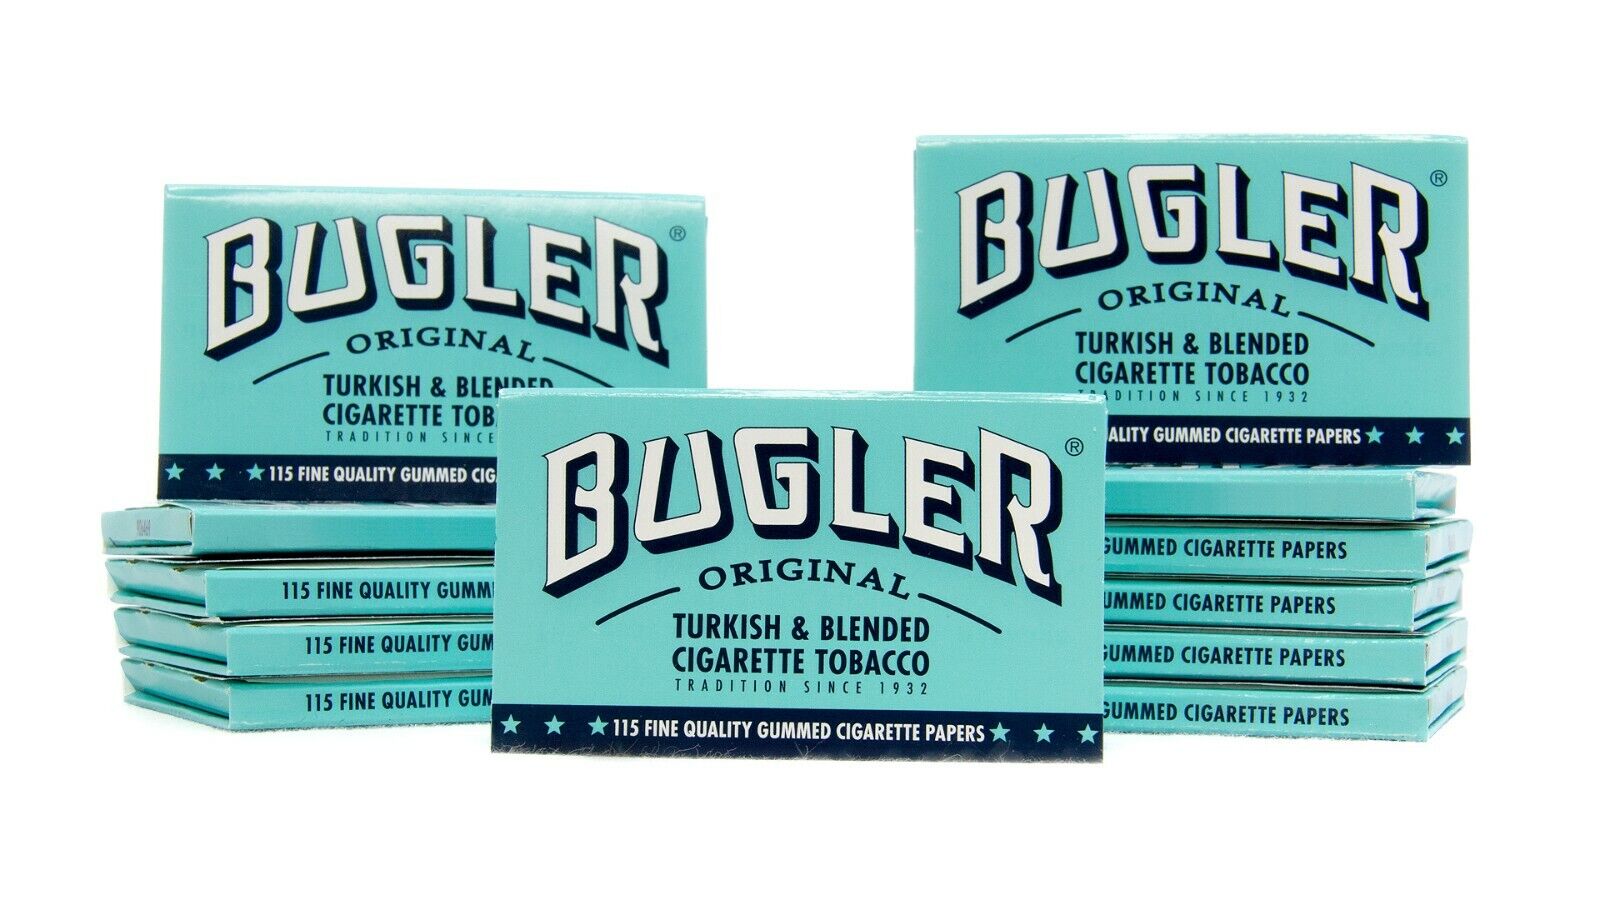 Bugler Original Turkish Blended 115 Gummed Cigarette Tobacco Papers (12 Packs)